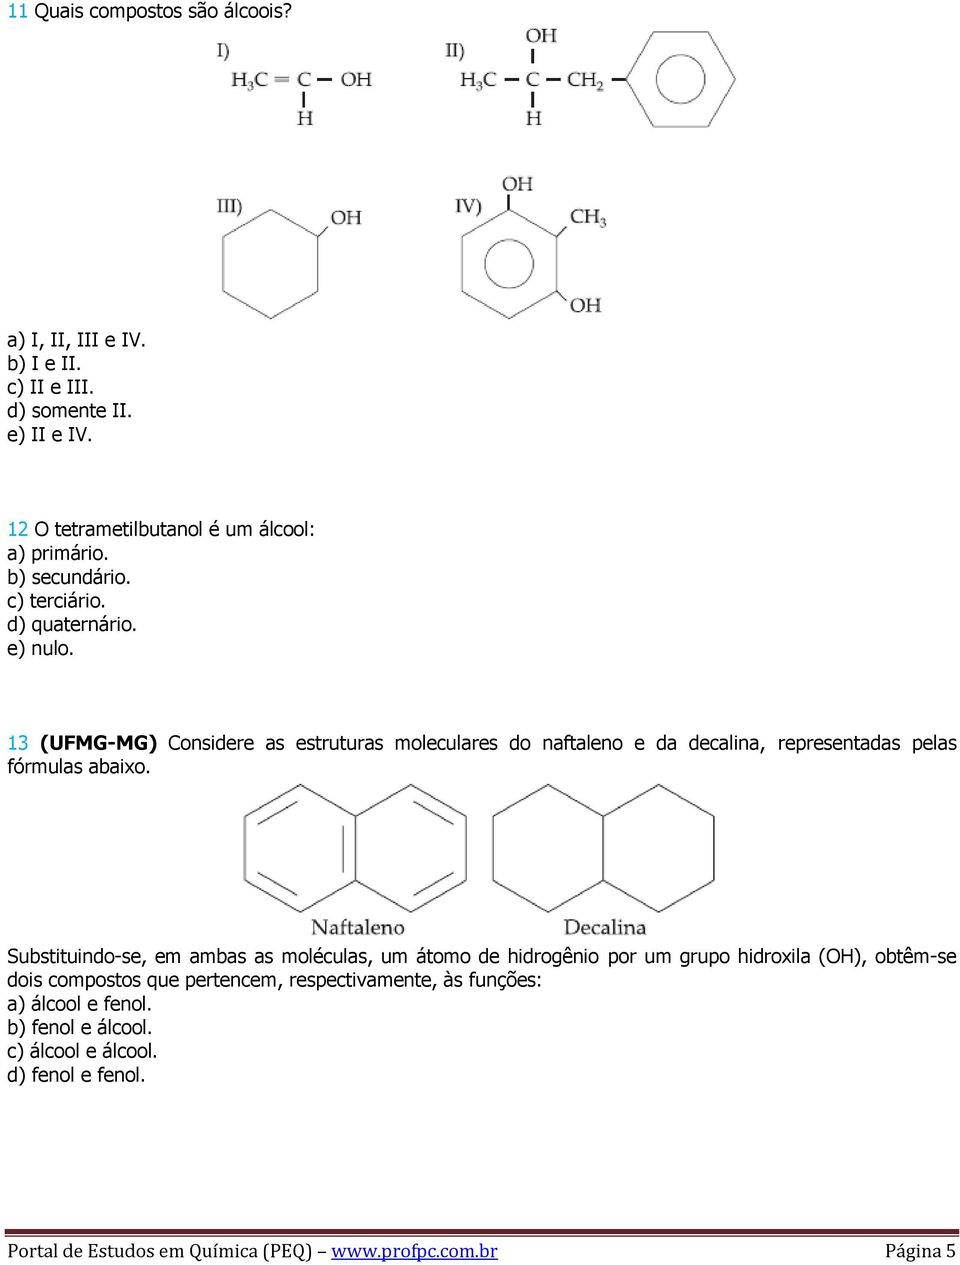 13 (UFMG-MG) Considere as estruturas moleculares do naftaleno e da decalina, representadas pelas fórmulas abaixo.